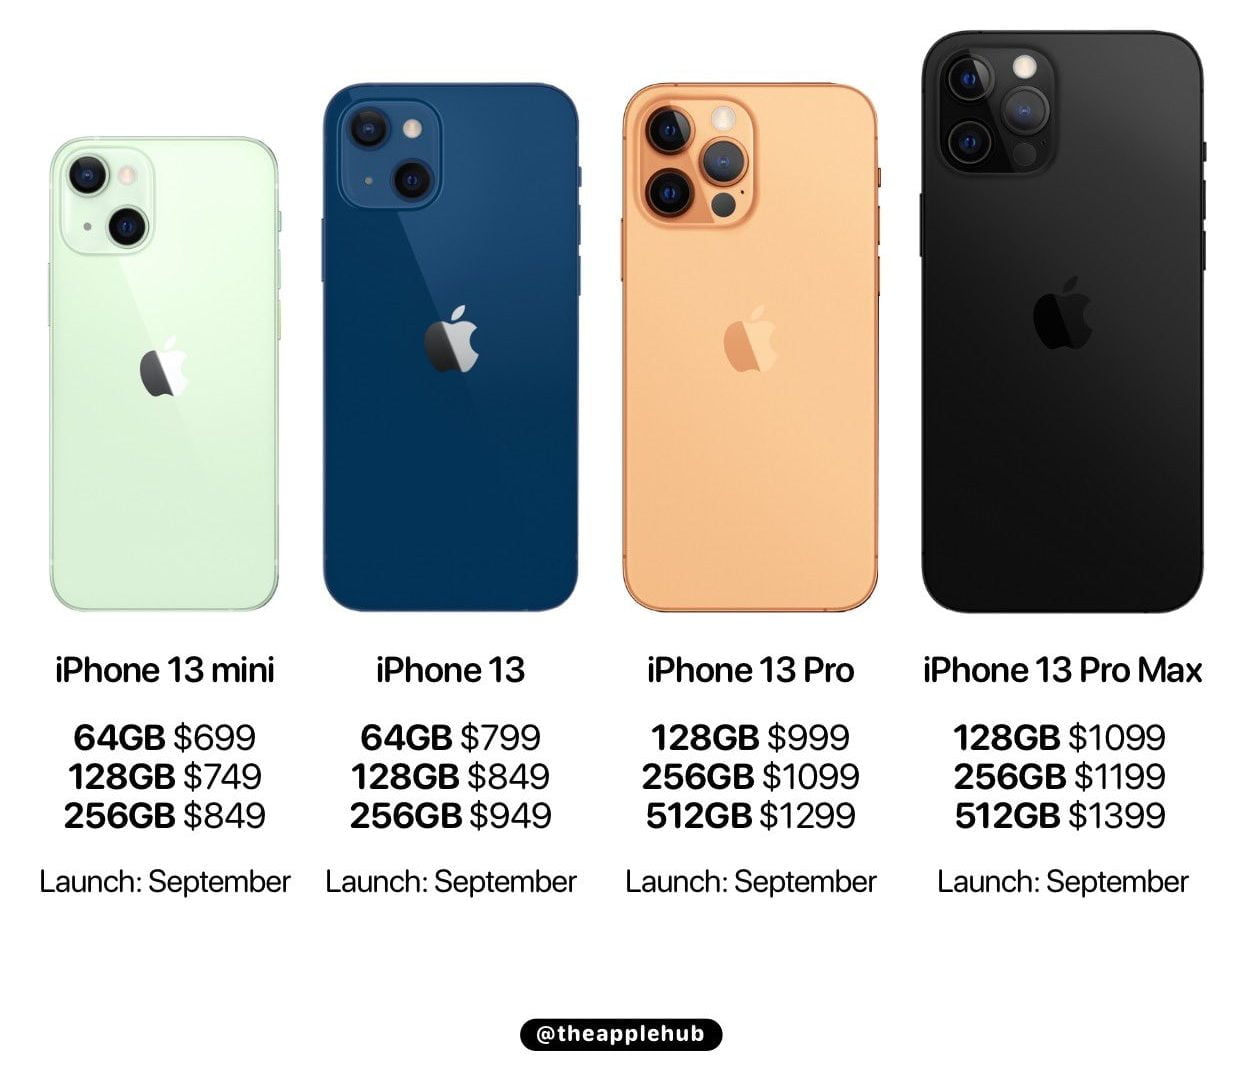 giá bán iPhone 13 Series